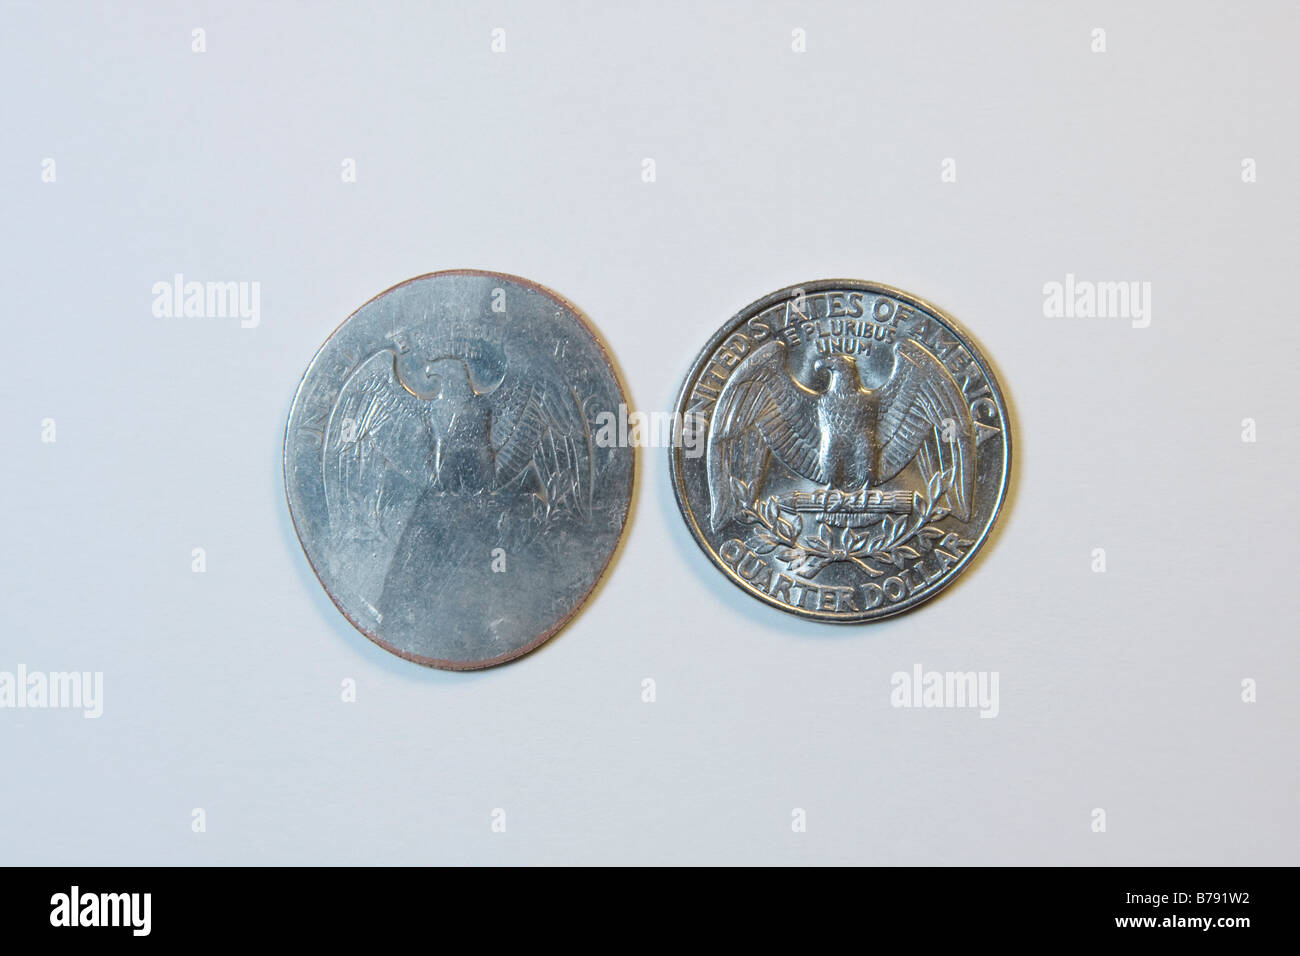 US-Währung.  Zwei 25-Cent-Münzen.  Man wurde von einem Zug überfahren. Stockfoto